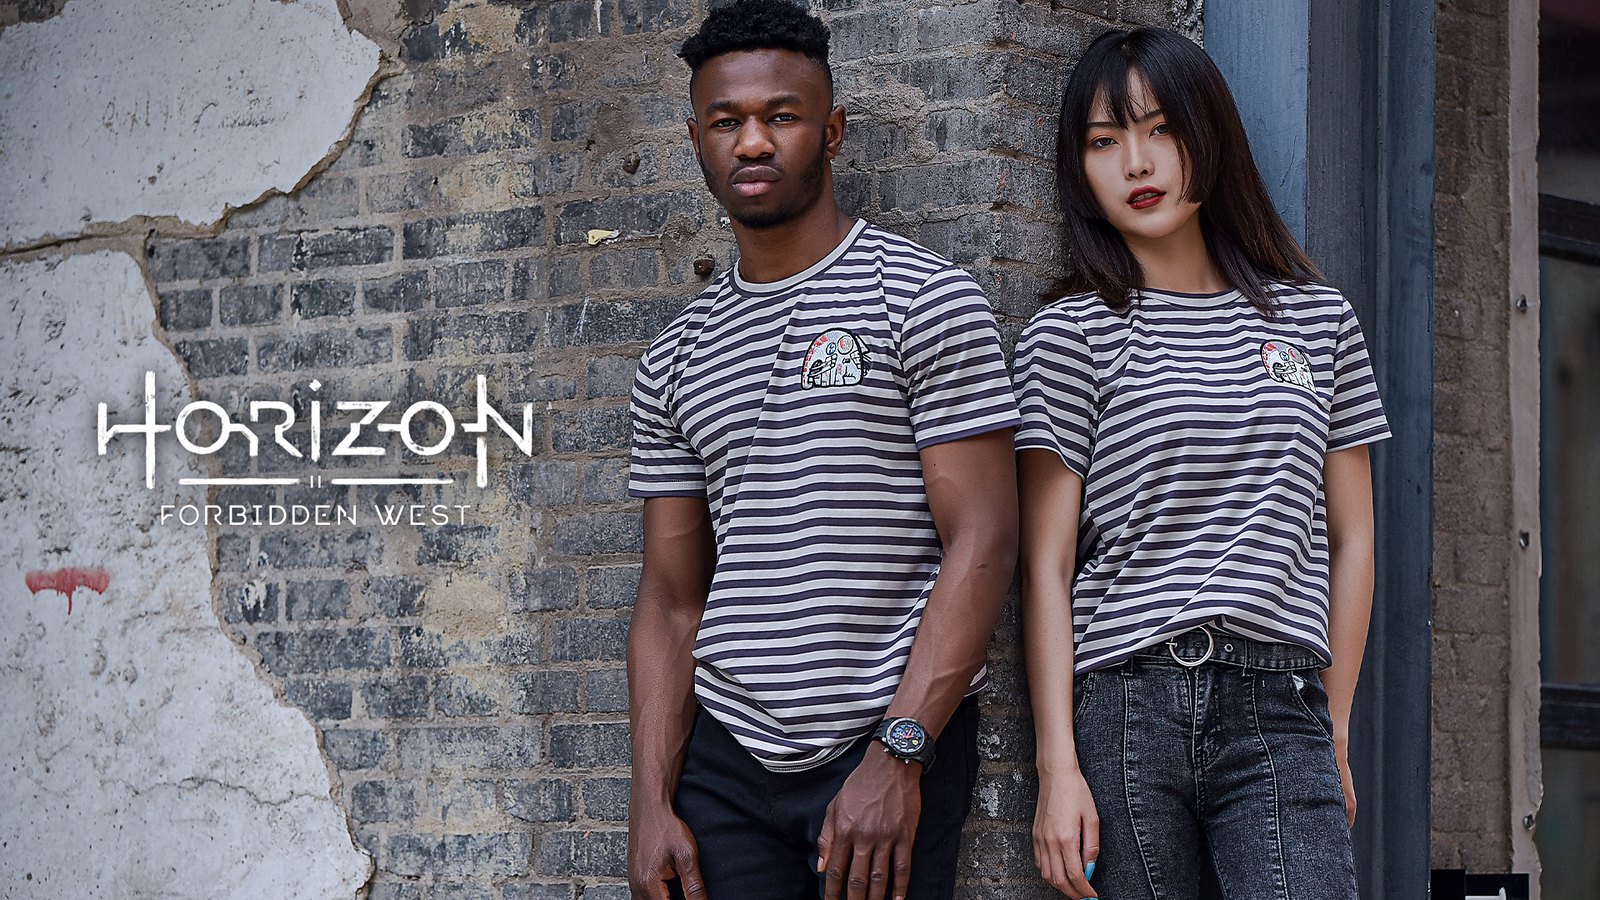 Horizon Zero Dawn - Merchandise